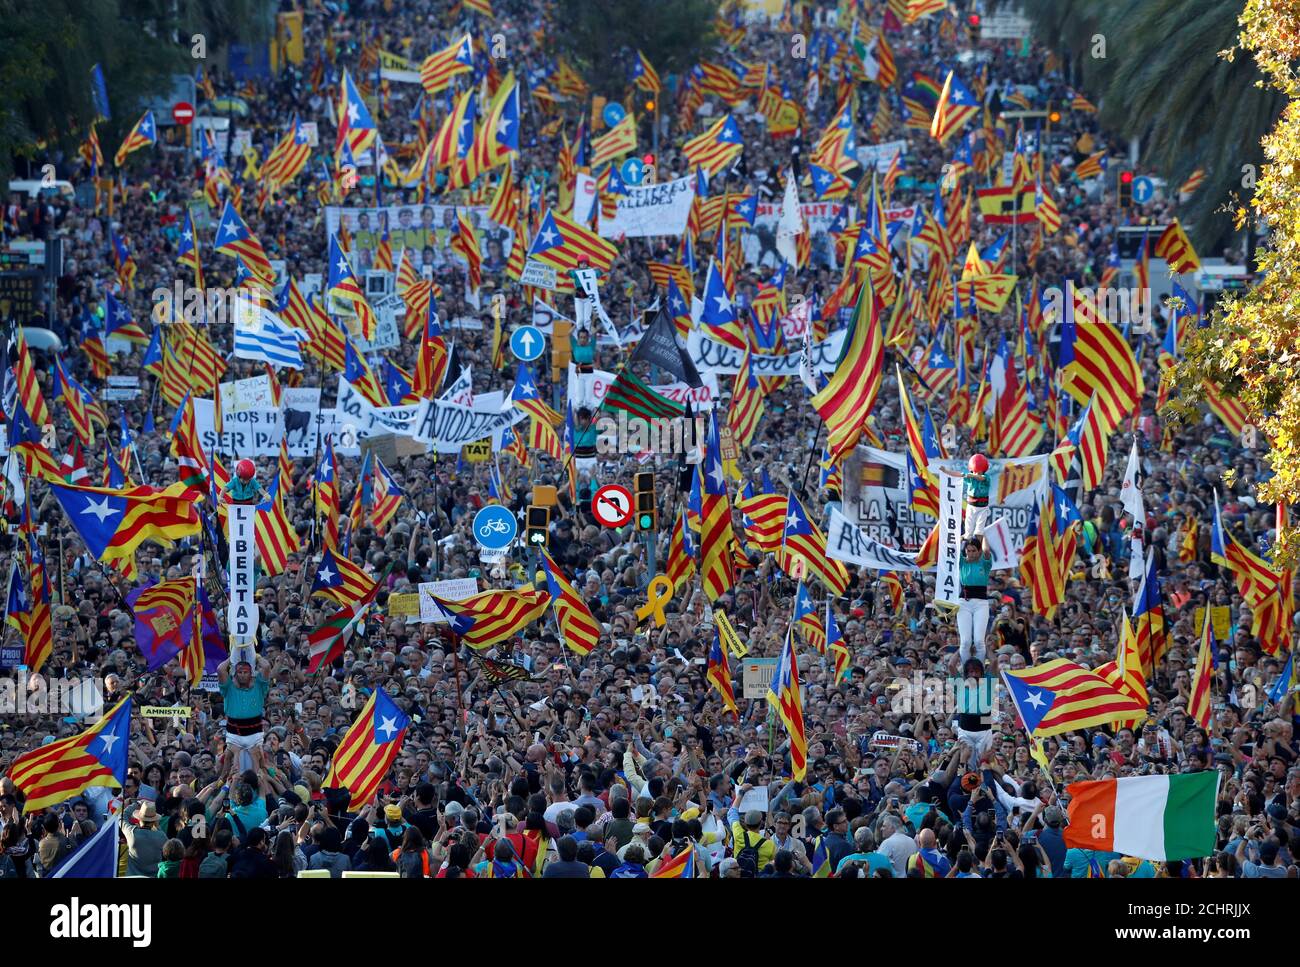 Menschen bilden einen menschlichen Turm und halten Transparente mit der Aufschrift "Freiheit", während katalanische Demonstranten für die Unabhängigkeit an einem Protest teilnehmen, um die Freilassung inhaftierten separatistischen Führern in Barcelona, Spanien, am 26. Oktober 2019 zu fordern. REUTERS/Albert Gea Stockfoto